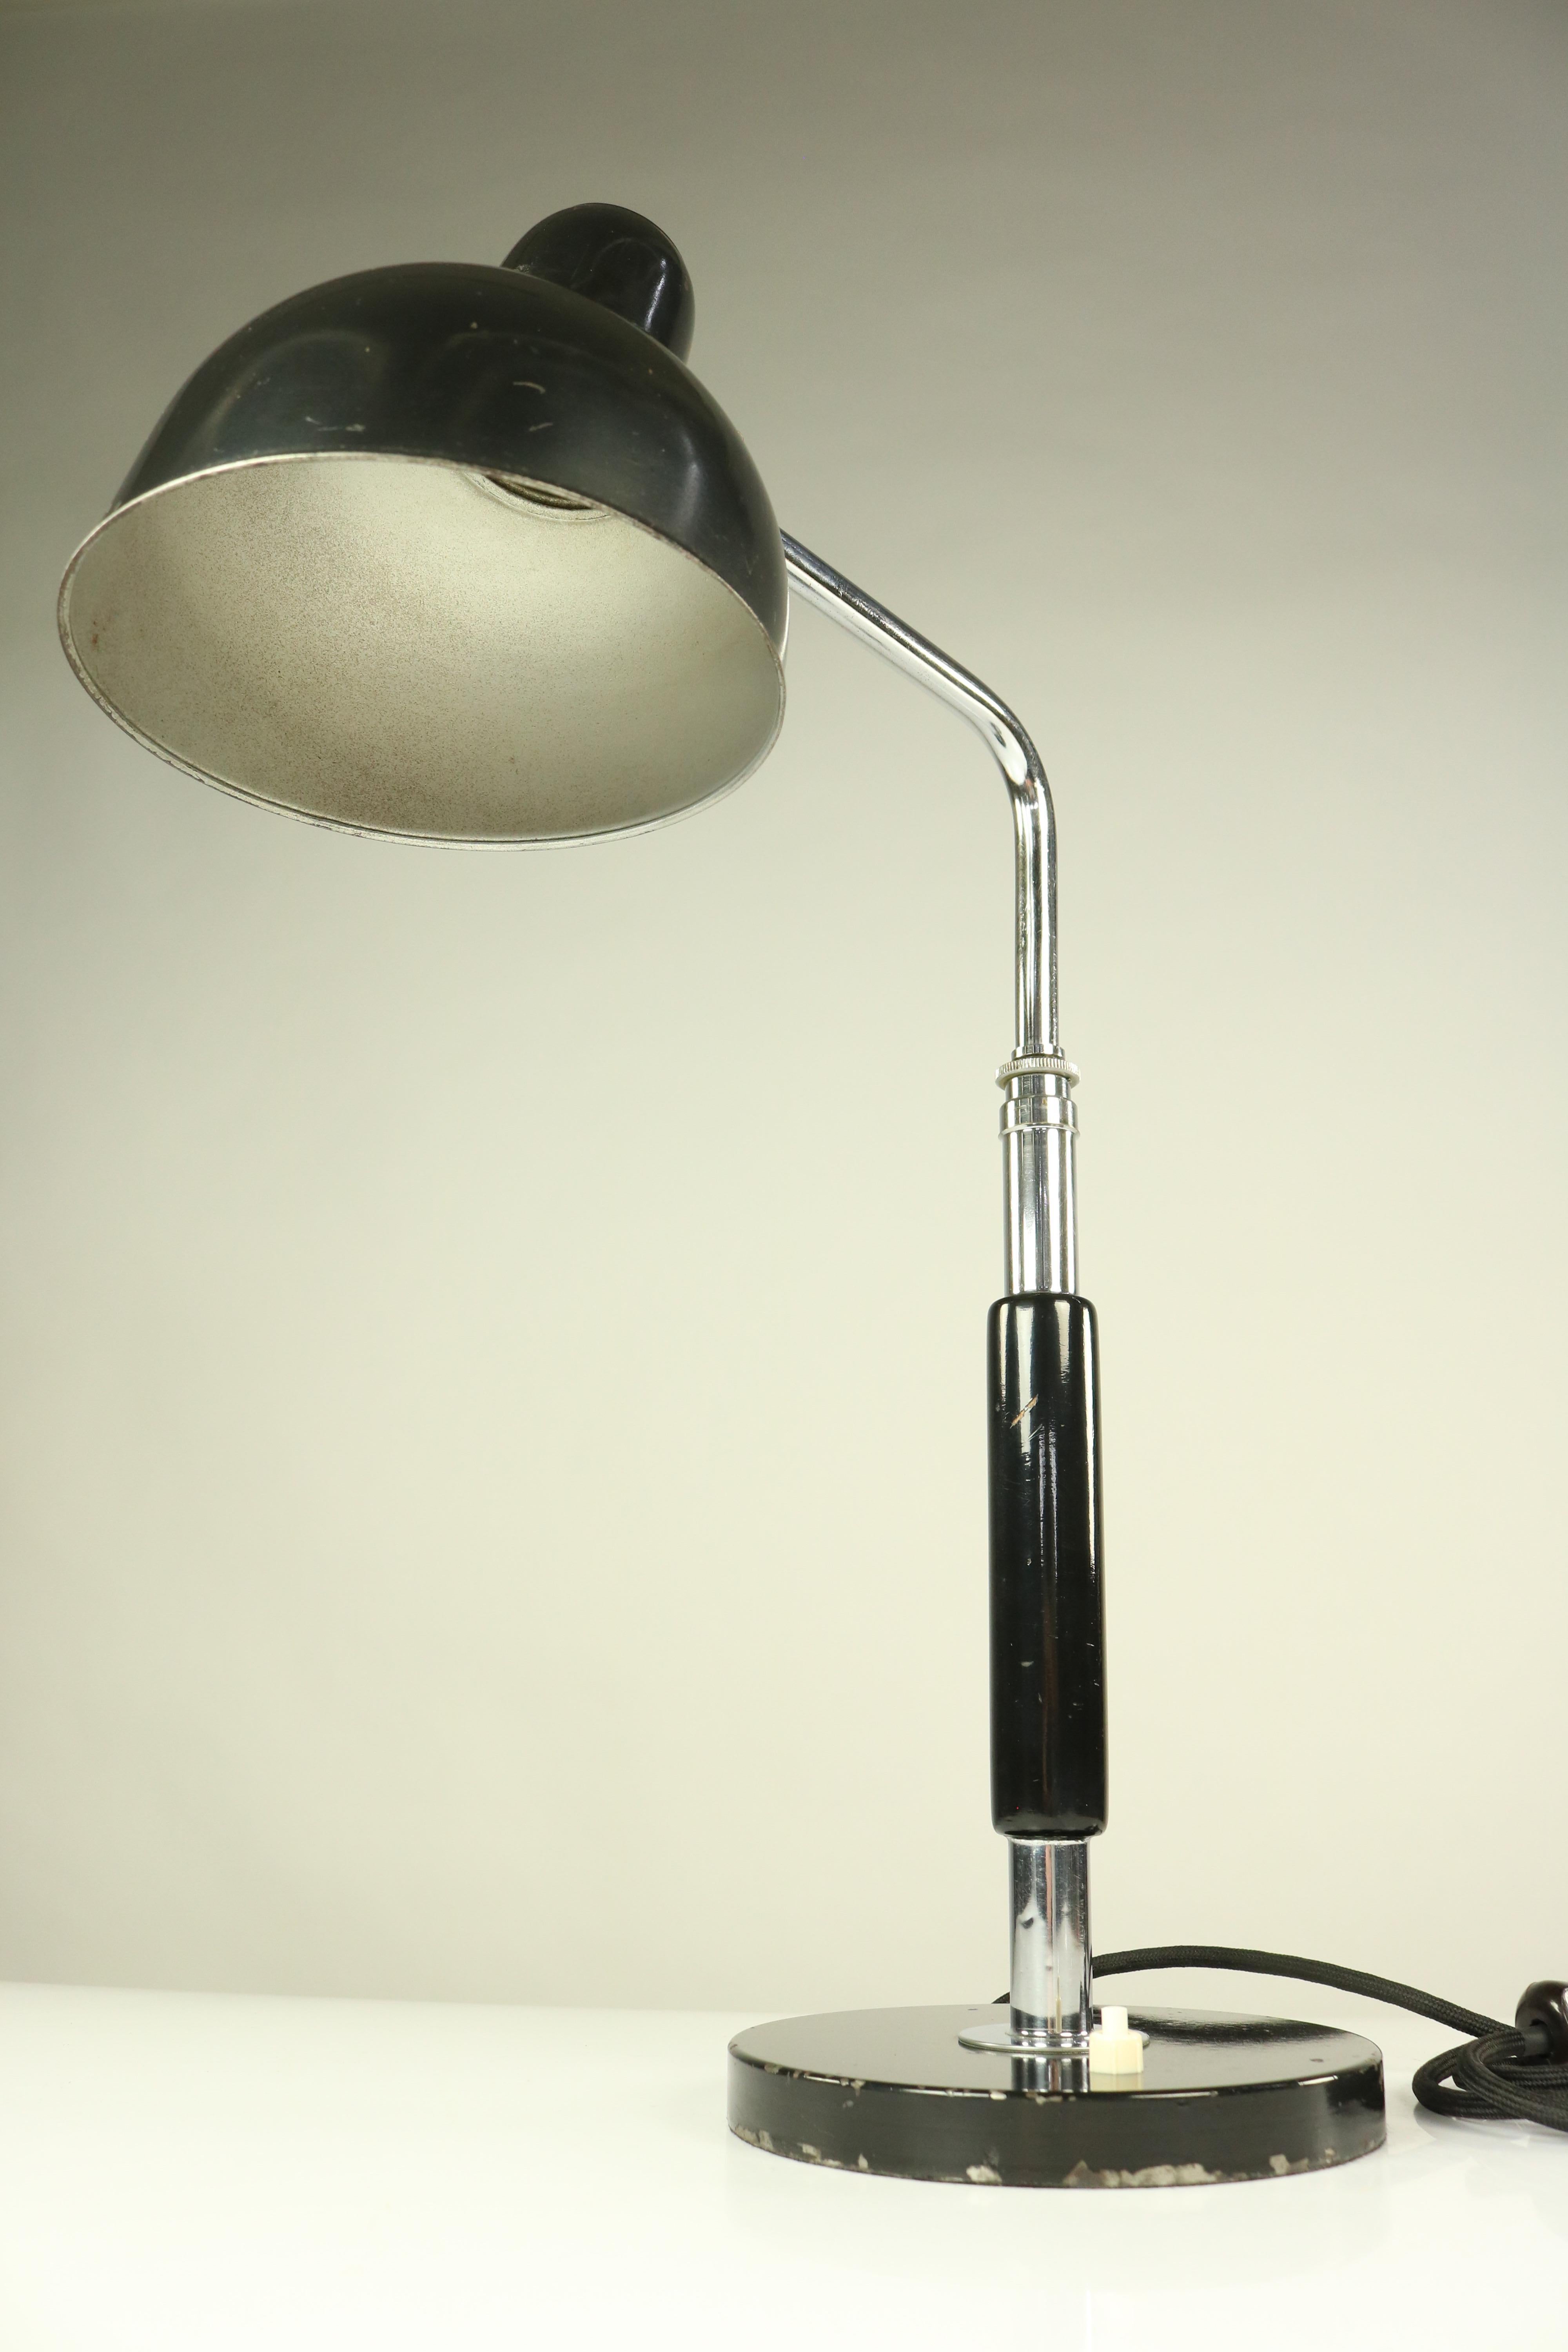 Christian Dell Desk Lamp by Kaiser Idell Bauhaus, 1930s Design, 1934 Model 6607 For Sale 2